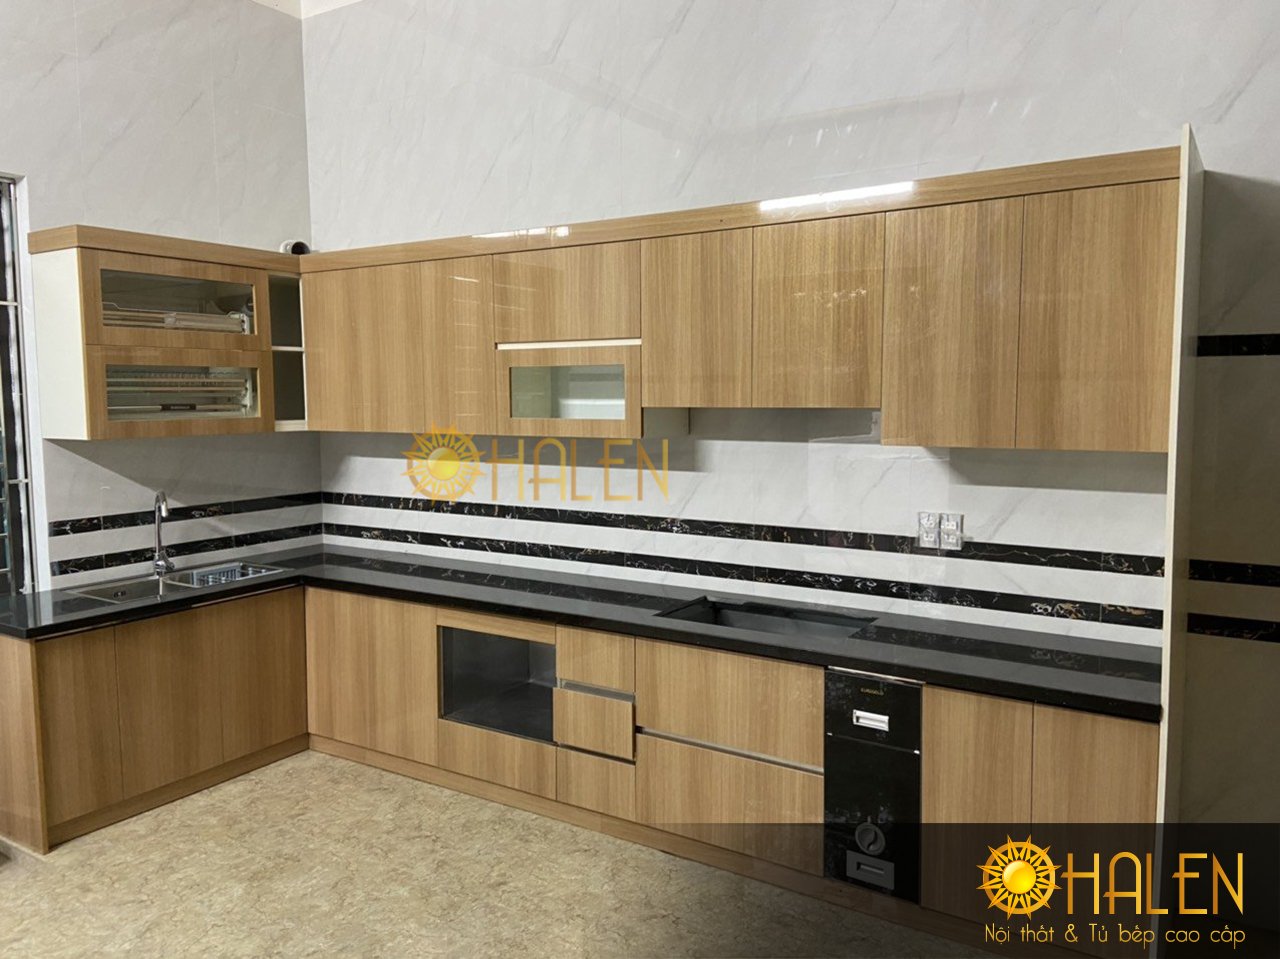 Tủ bếp inox cánh Acrylic màu vân gỗ vàng nhạt rất hiện đại - Mẫu tủ bếp giá rẻ rất ăn khách tại OHALEN